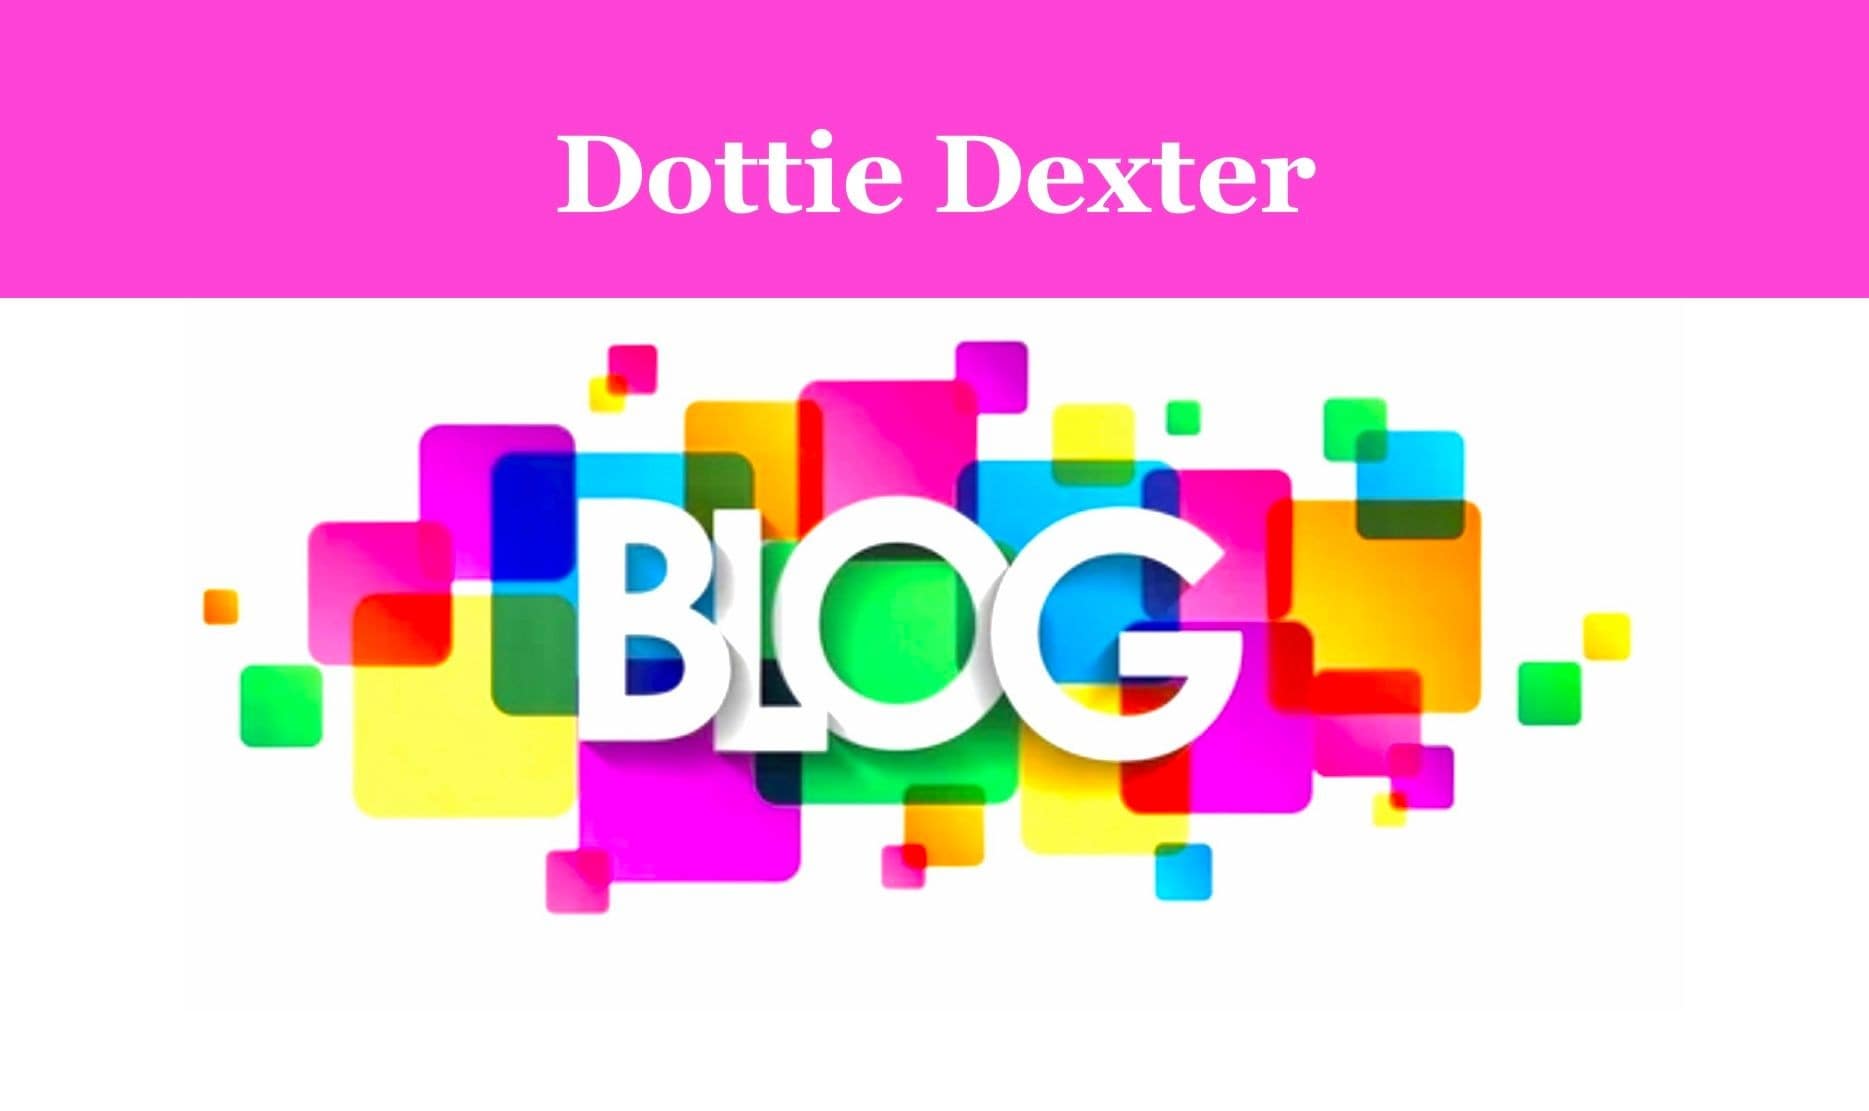 Dottie Dexter Blog!